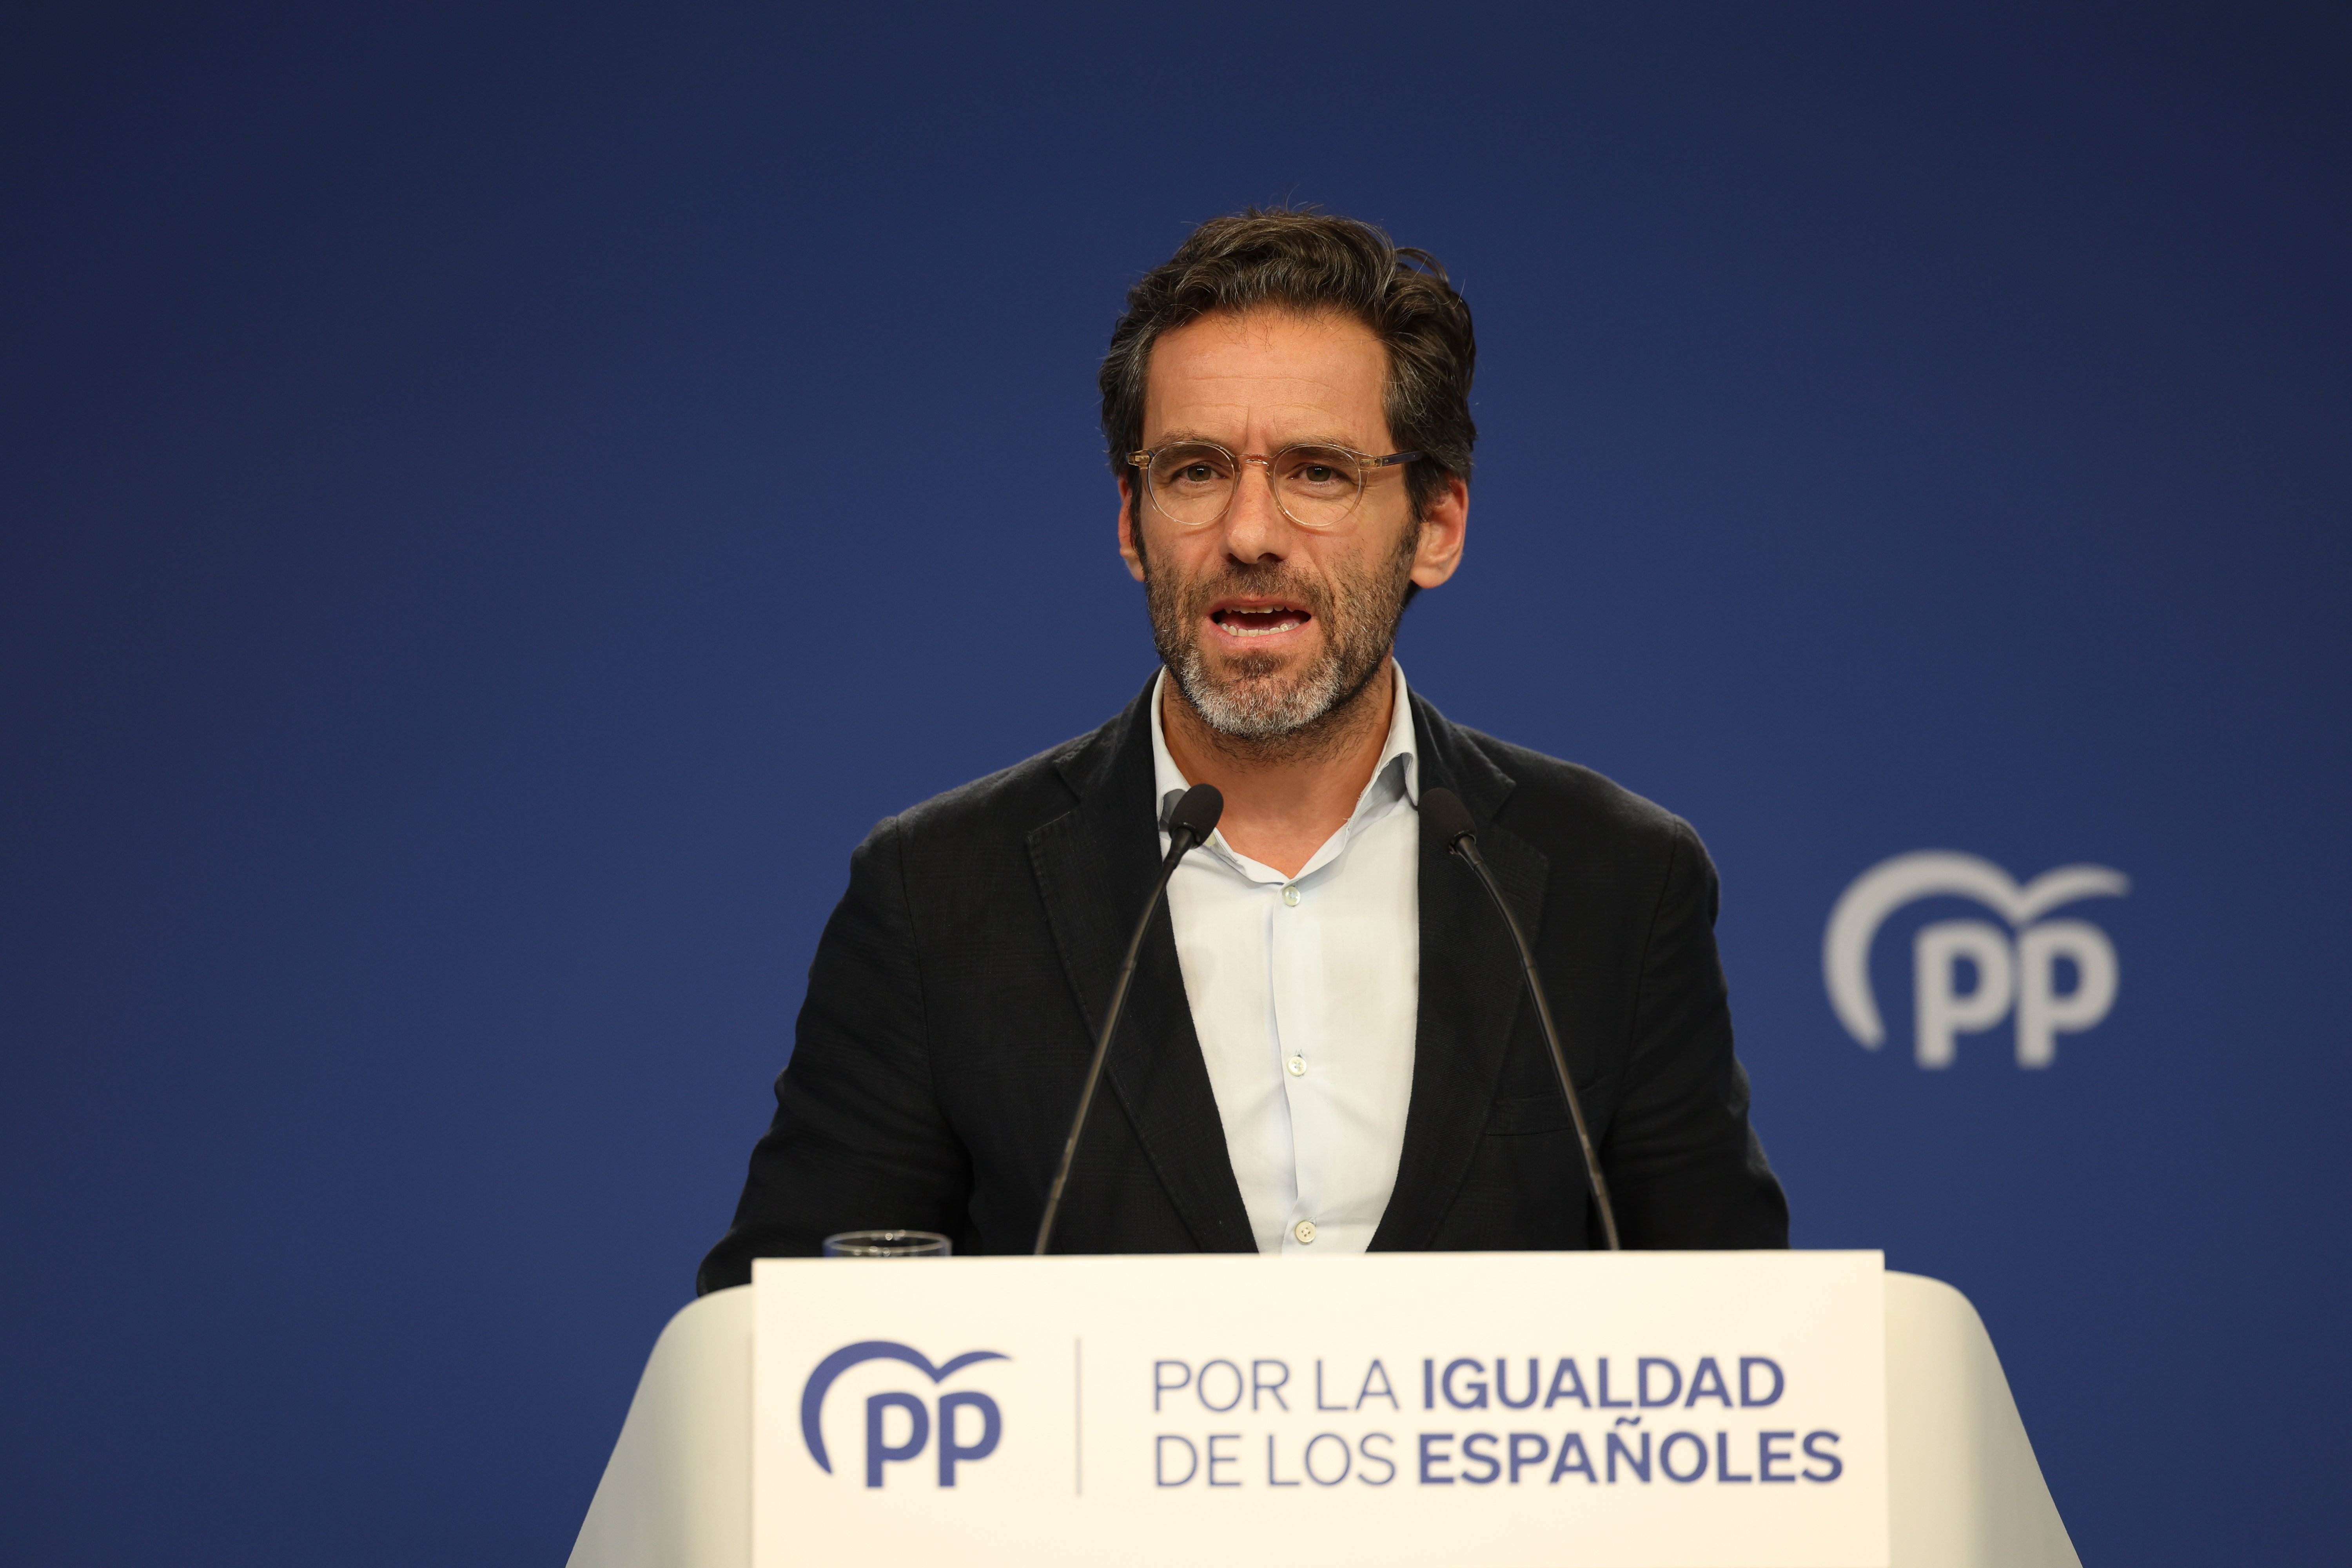 Els diputats del PP mantindran el castellà al Congrés: “No farem el paperina”